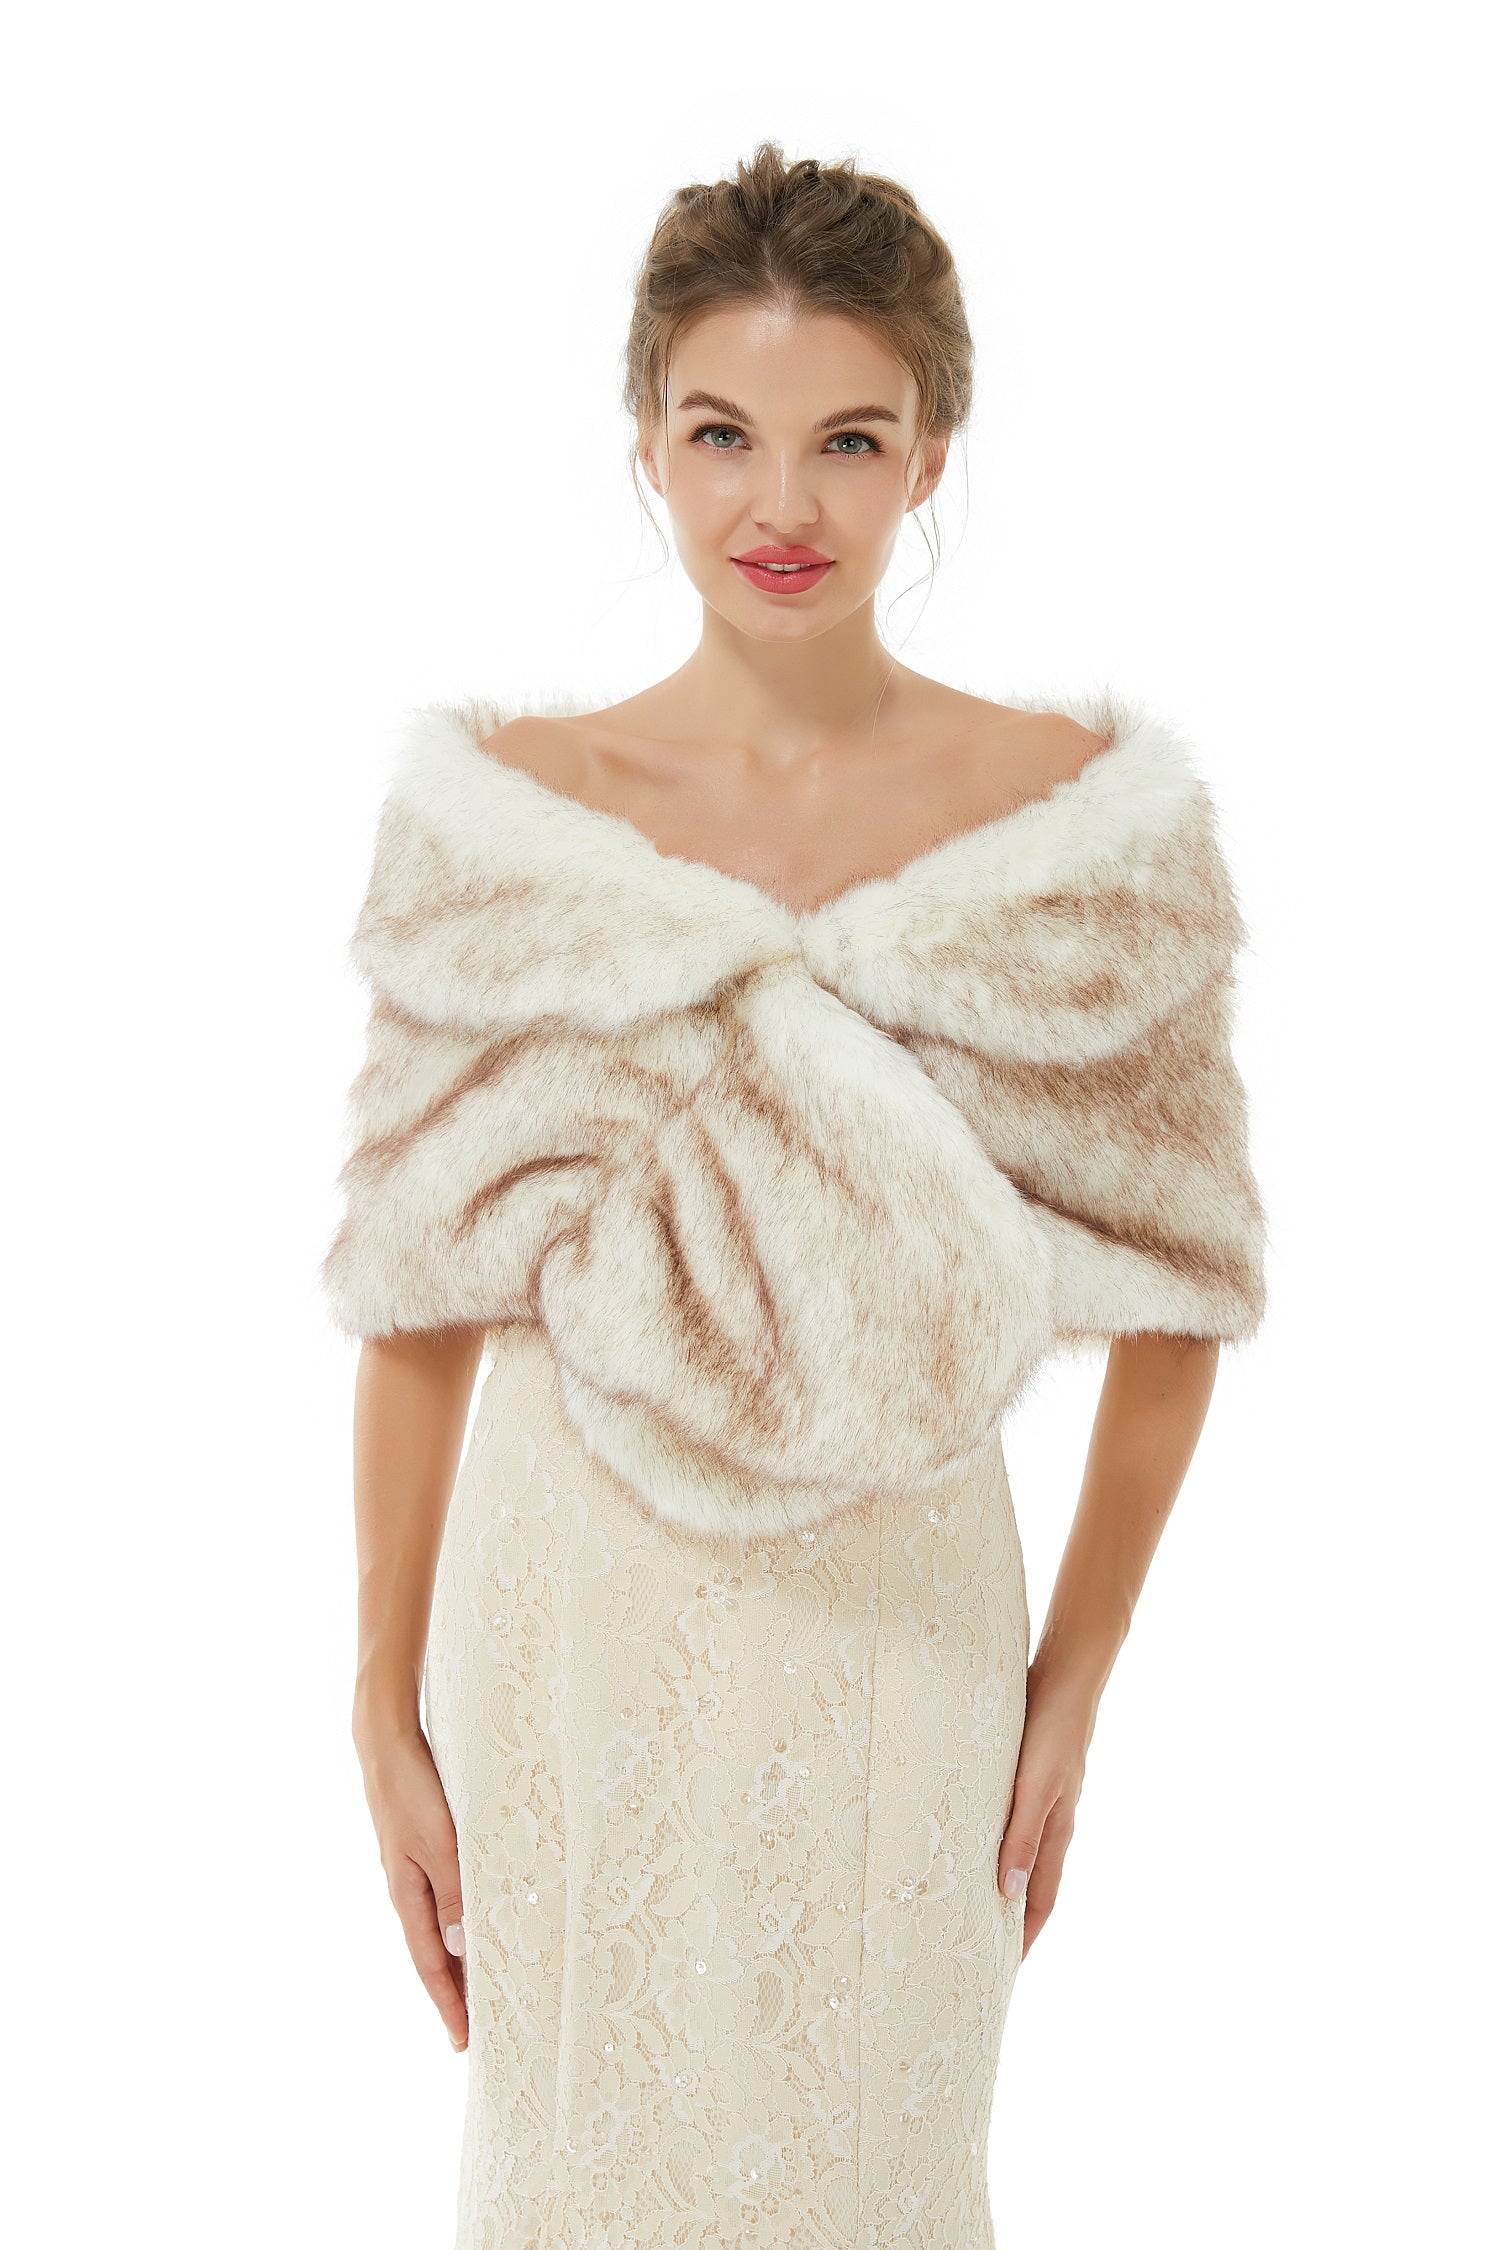 Bellasprom Fashion Faux Fur Wrap Women Shawl for Weddings Bellasprom